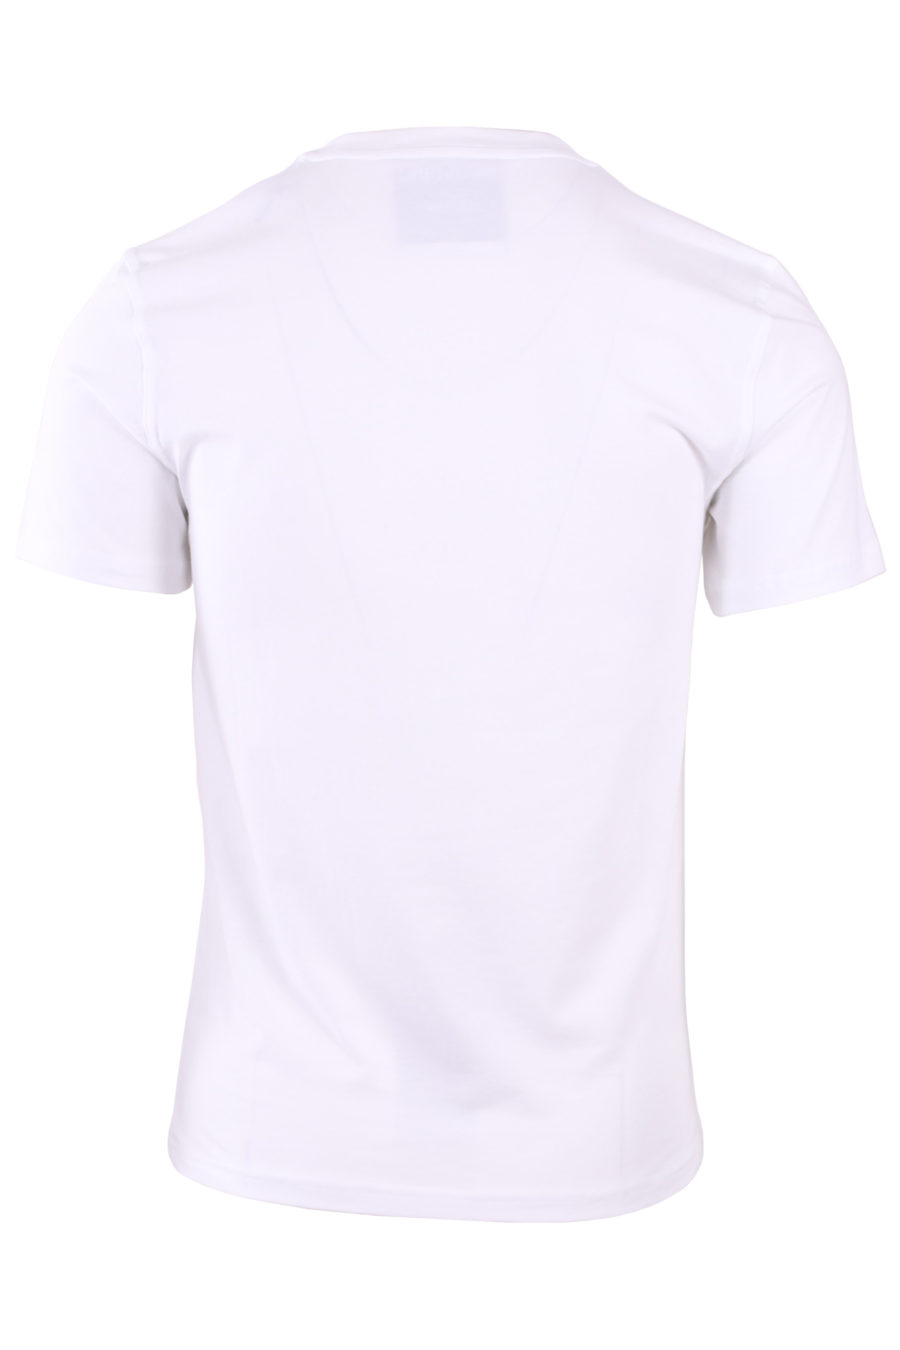 Camiseta blanca doble pregunta glitch - bc23ad85120c2ab9d03fada3f617e69cacb191e2